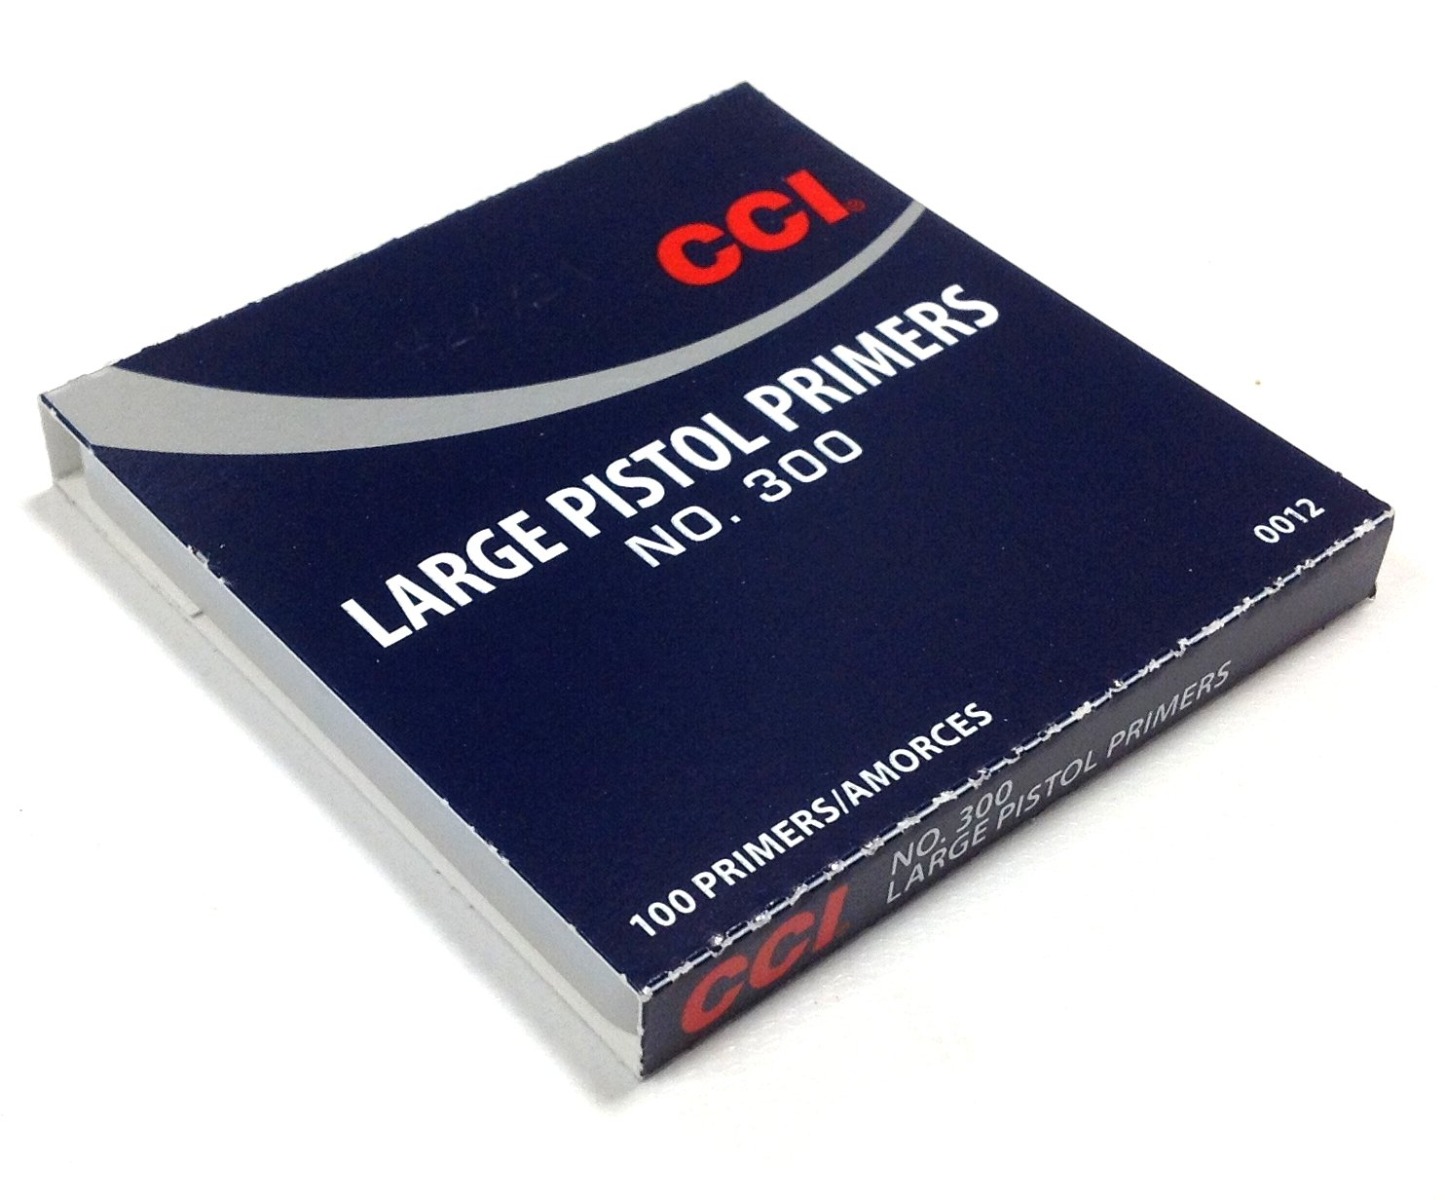 CCI Large Pistol Primers #300